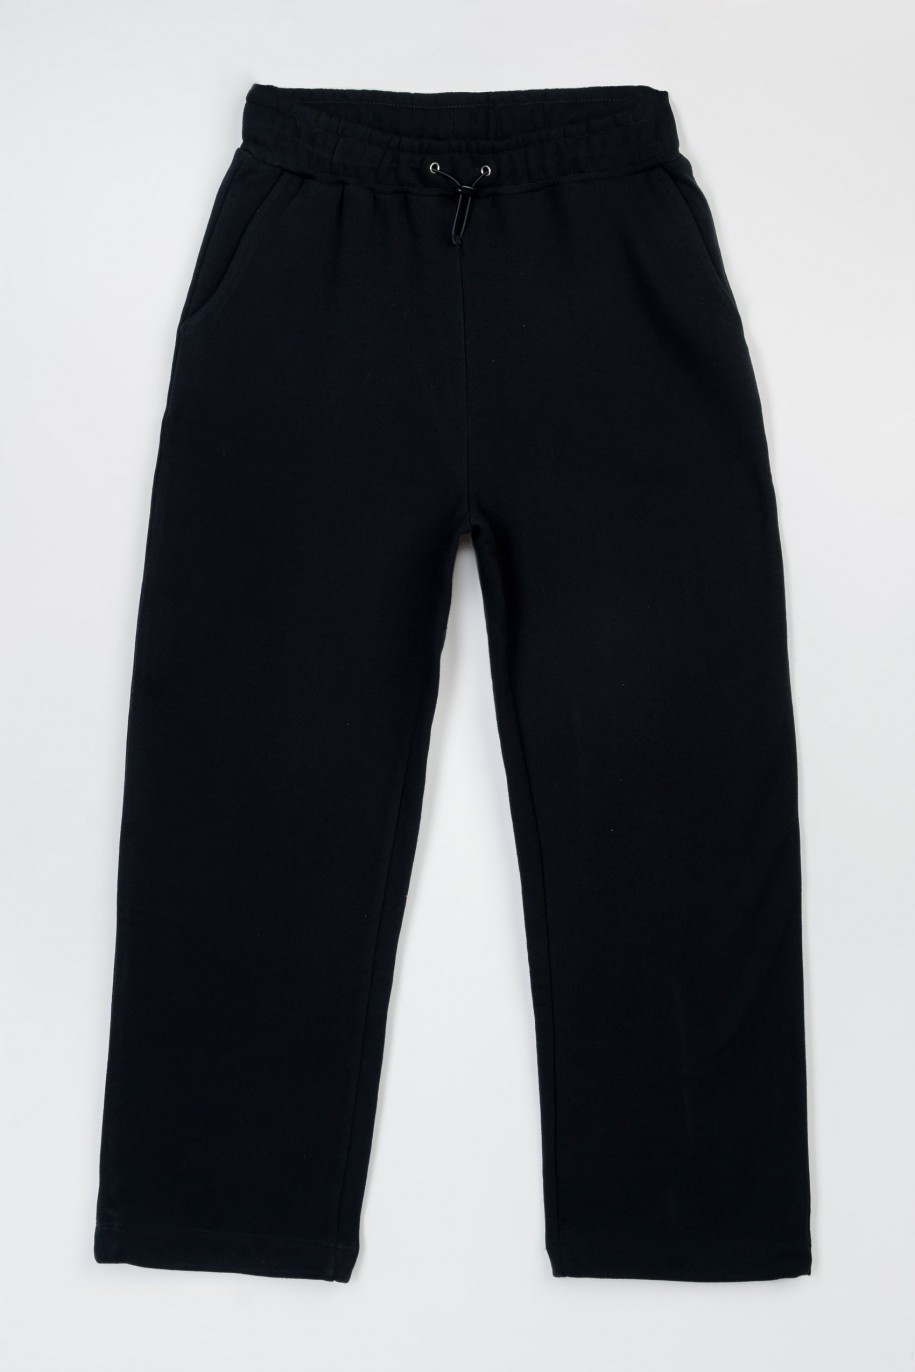 Czarne spodnie dresowe oversize ze ściąganymi nogawkami - 47410